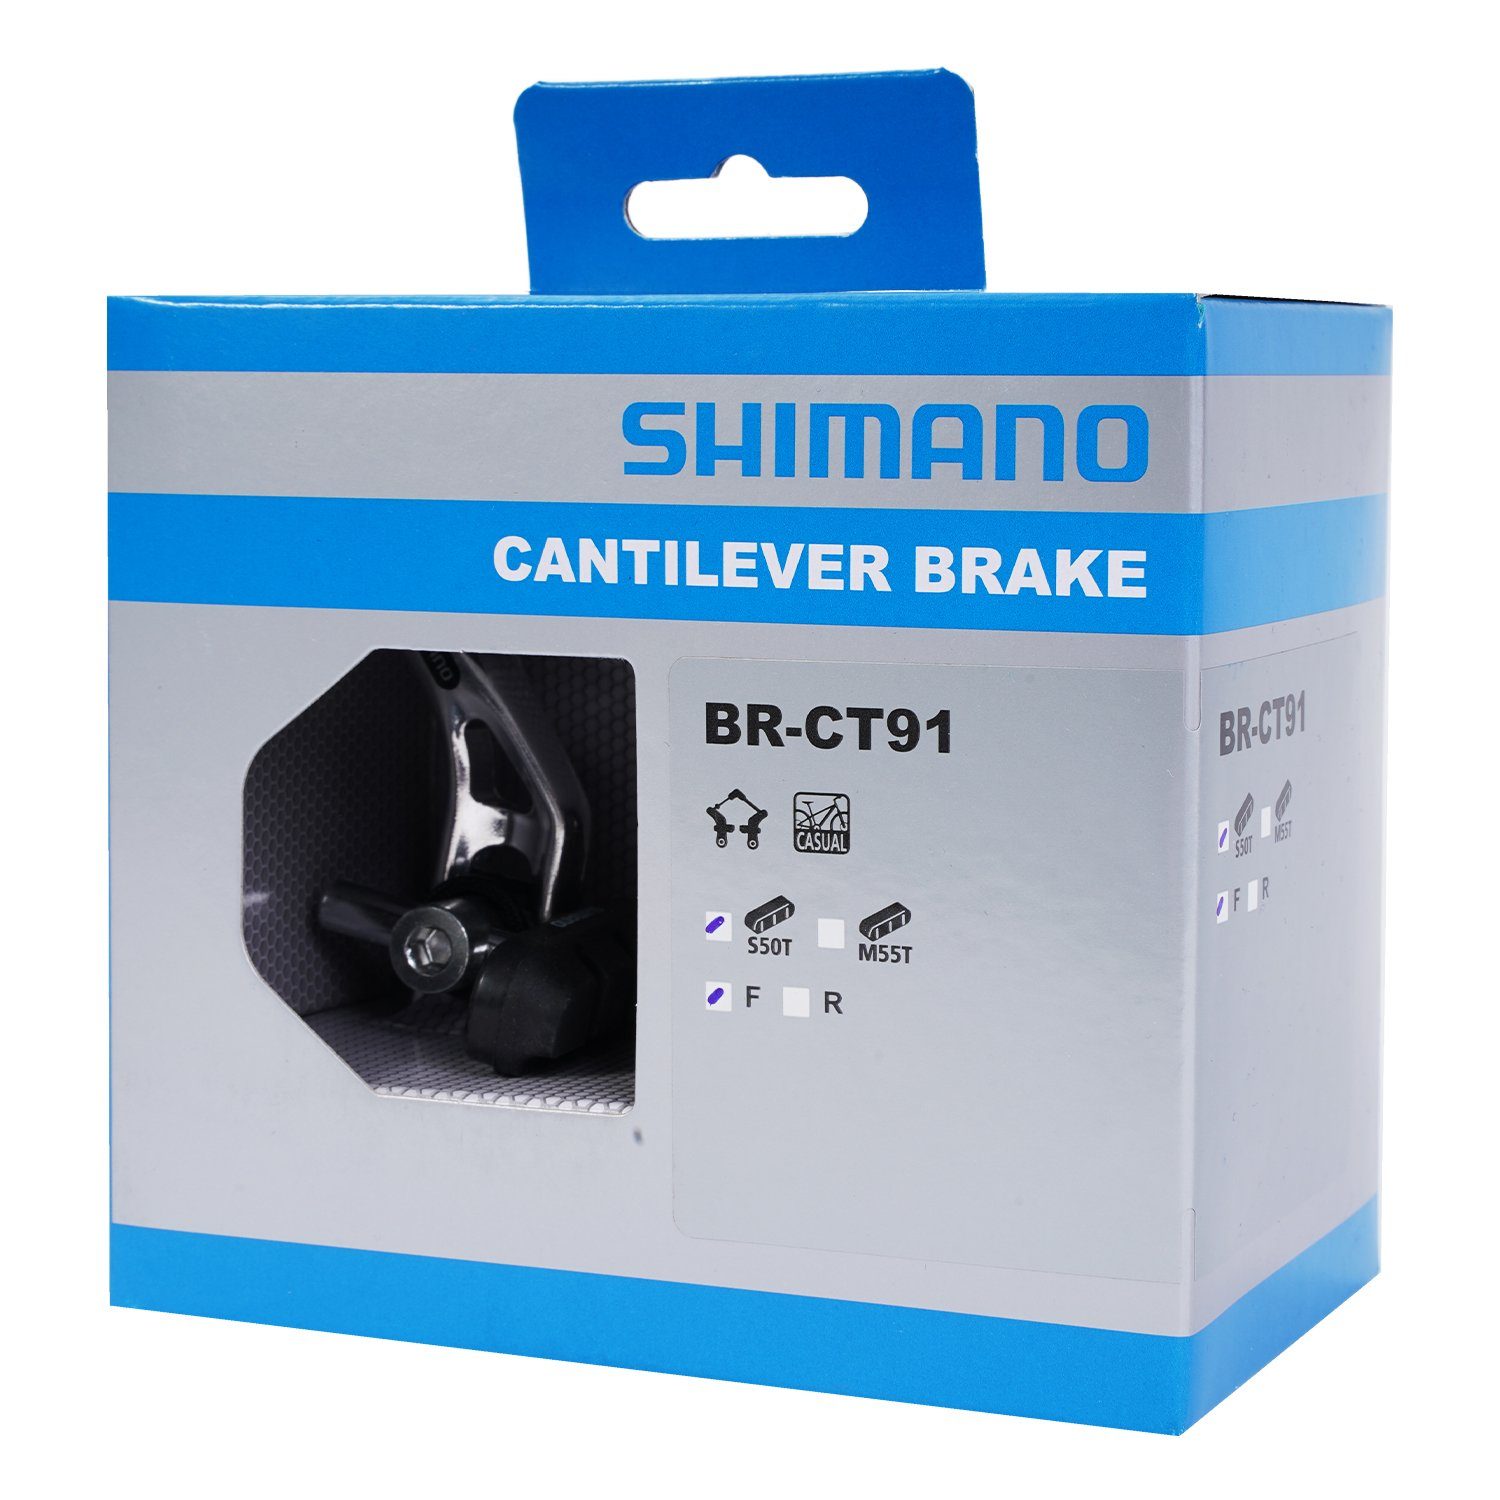 Shimano Fahrradsattel BR-CT91 Cantilever-Bremse Bremsbelag, VR Vorne Bremsen mit Canit-Lever